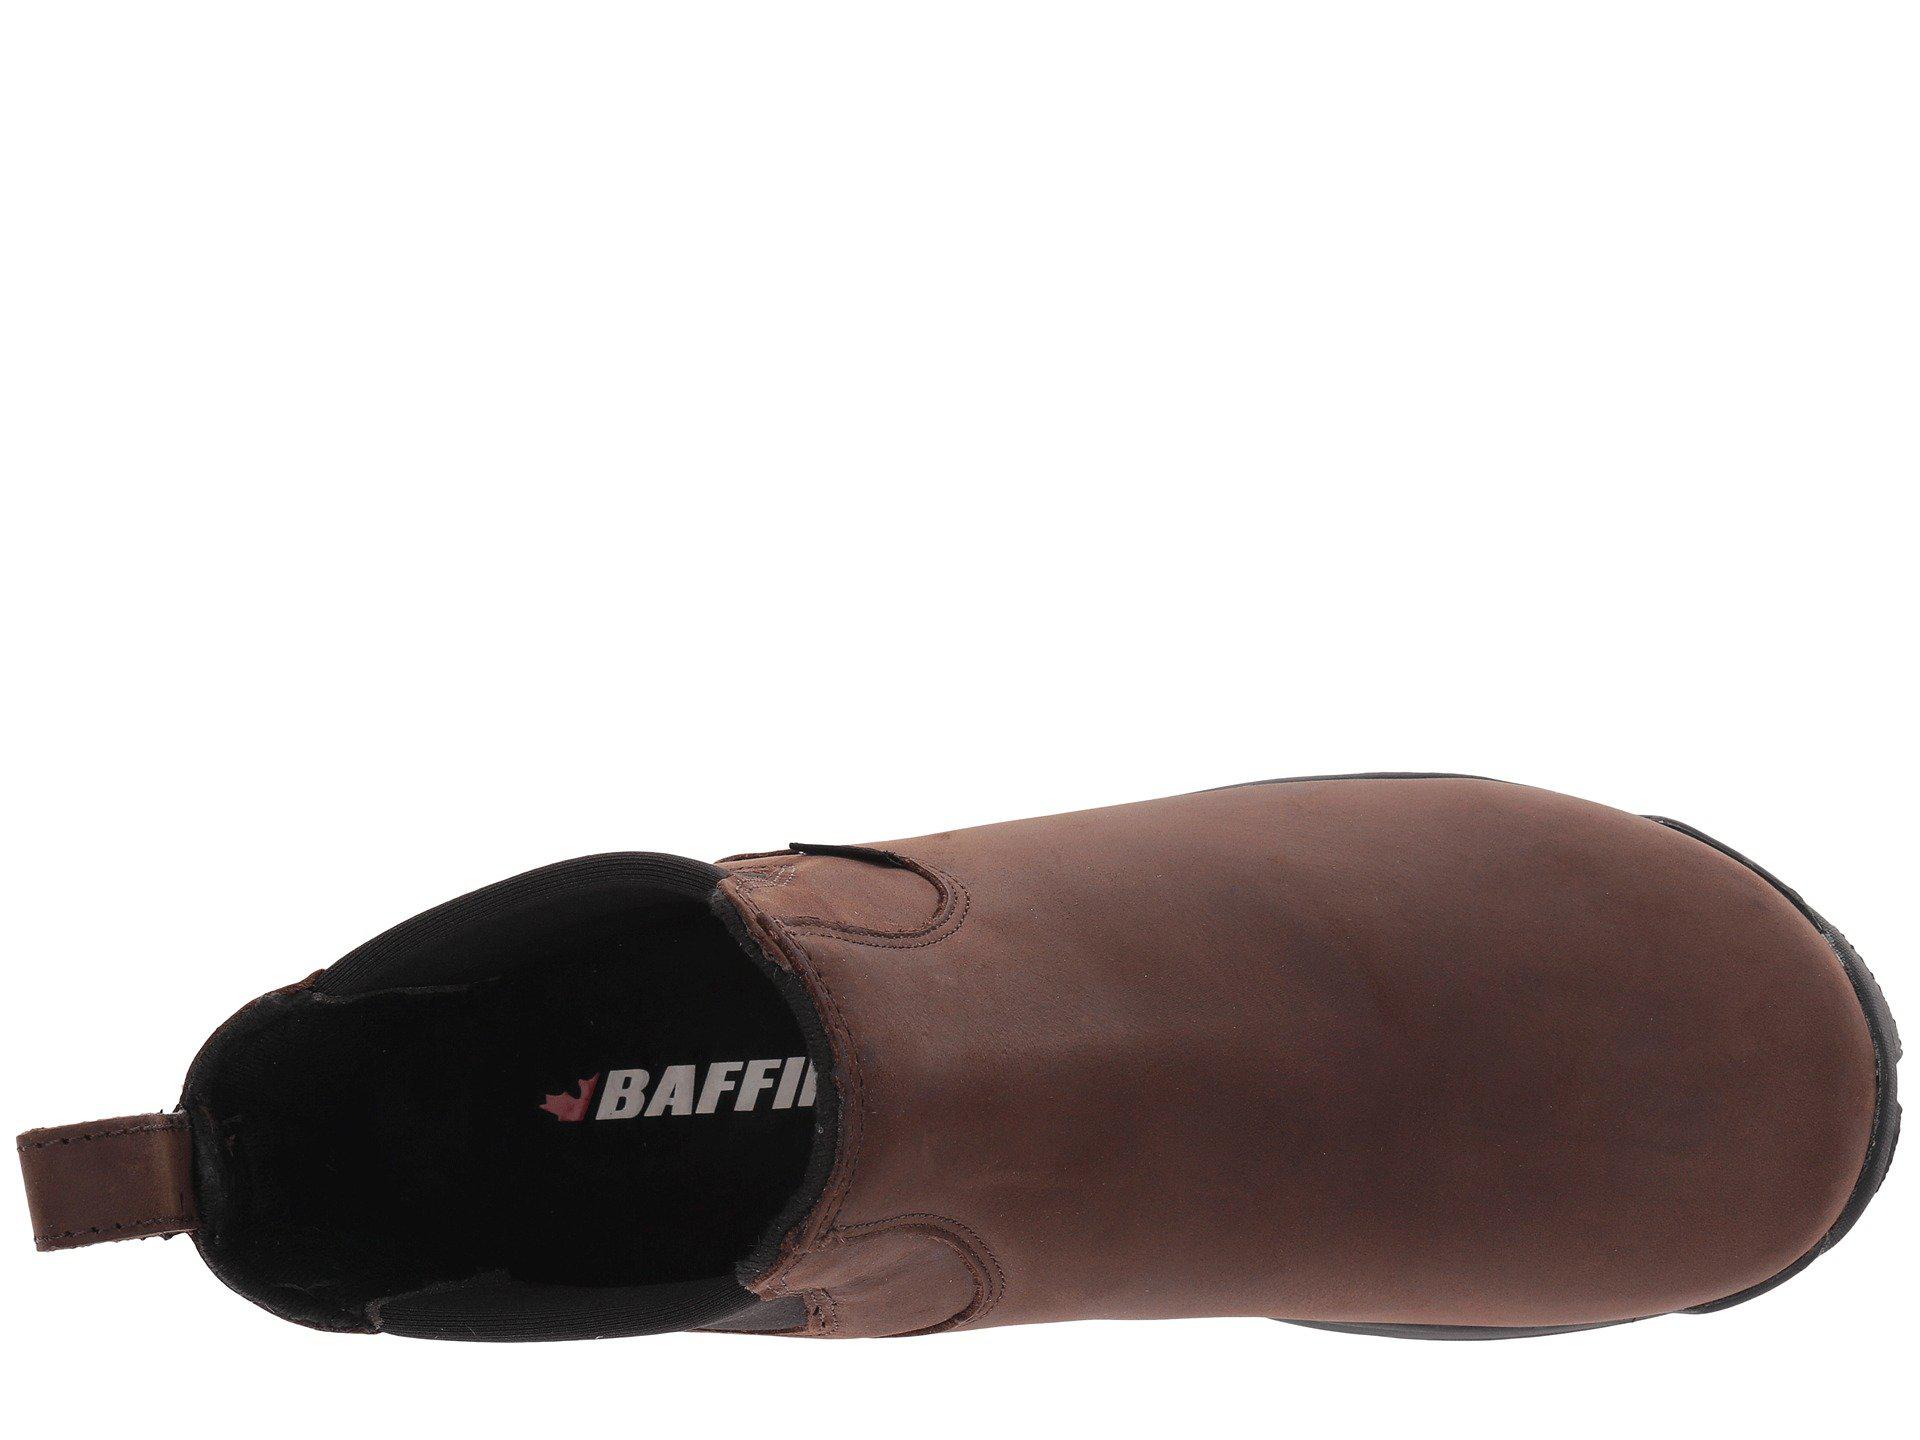 baffin copenhagen chelsea boots